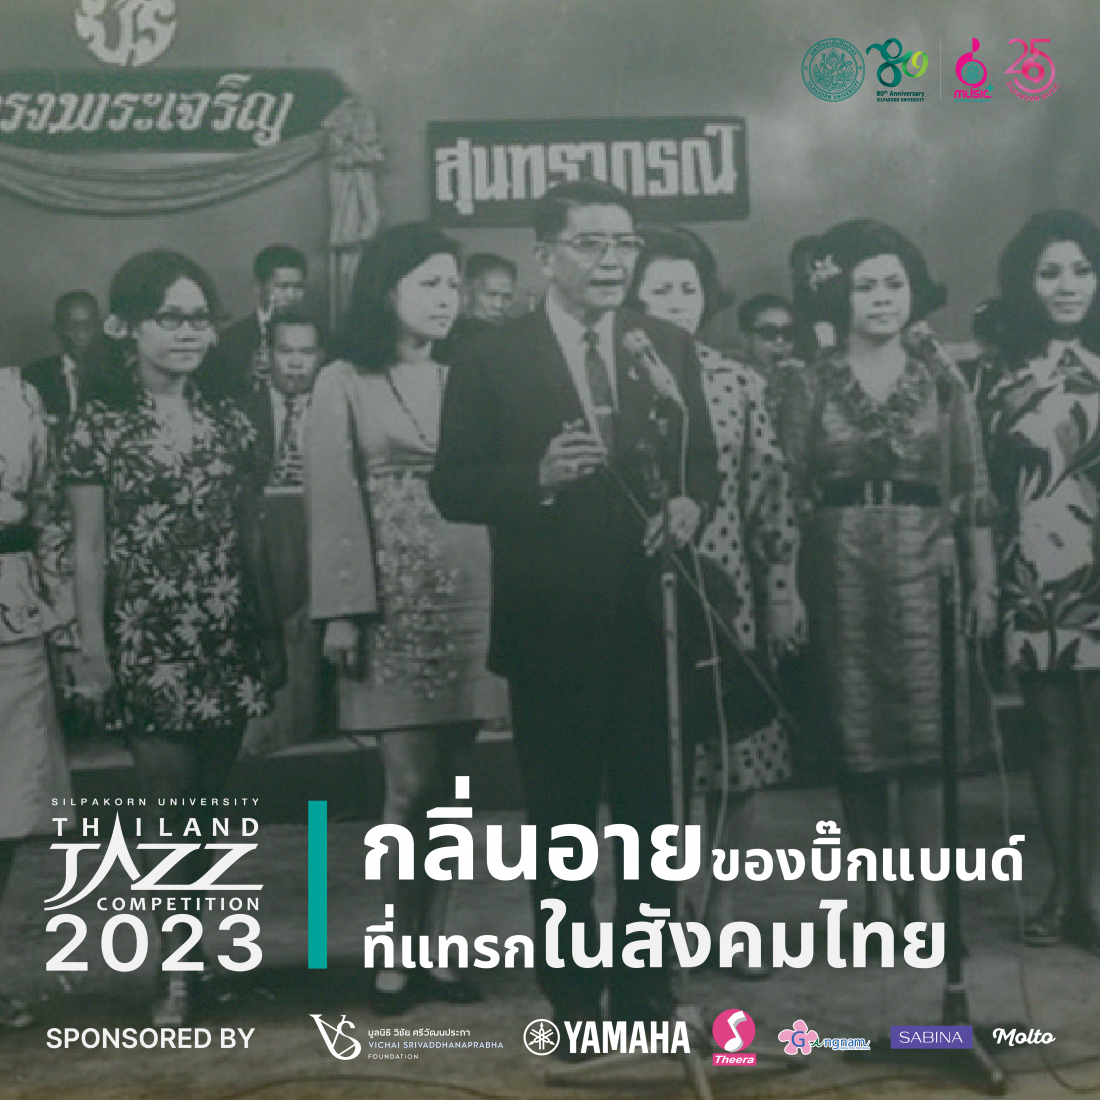 กลิ่นอายของบิ๊กแบนด์ที่แทรกในสังคมไทย: จากวงกรมโฆษณาการ สู่สุนทราภรณ์ และแหล่งรวมวัยรุ่นเทสต์ดีแห่งยุค 50s - 60s อย่างลุมพินีสถาน